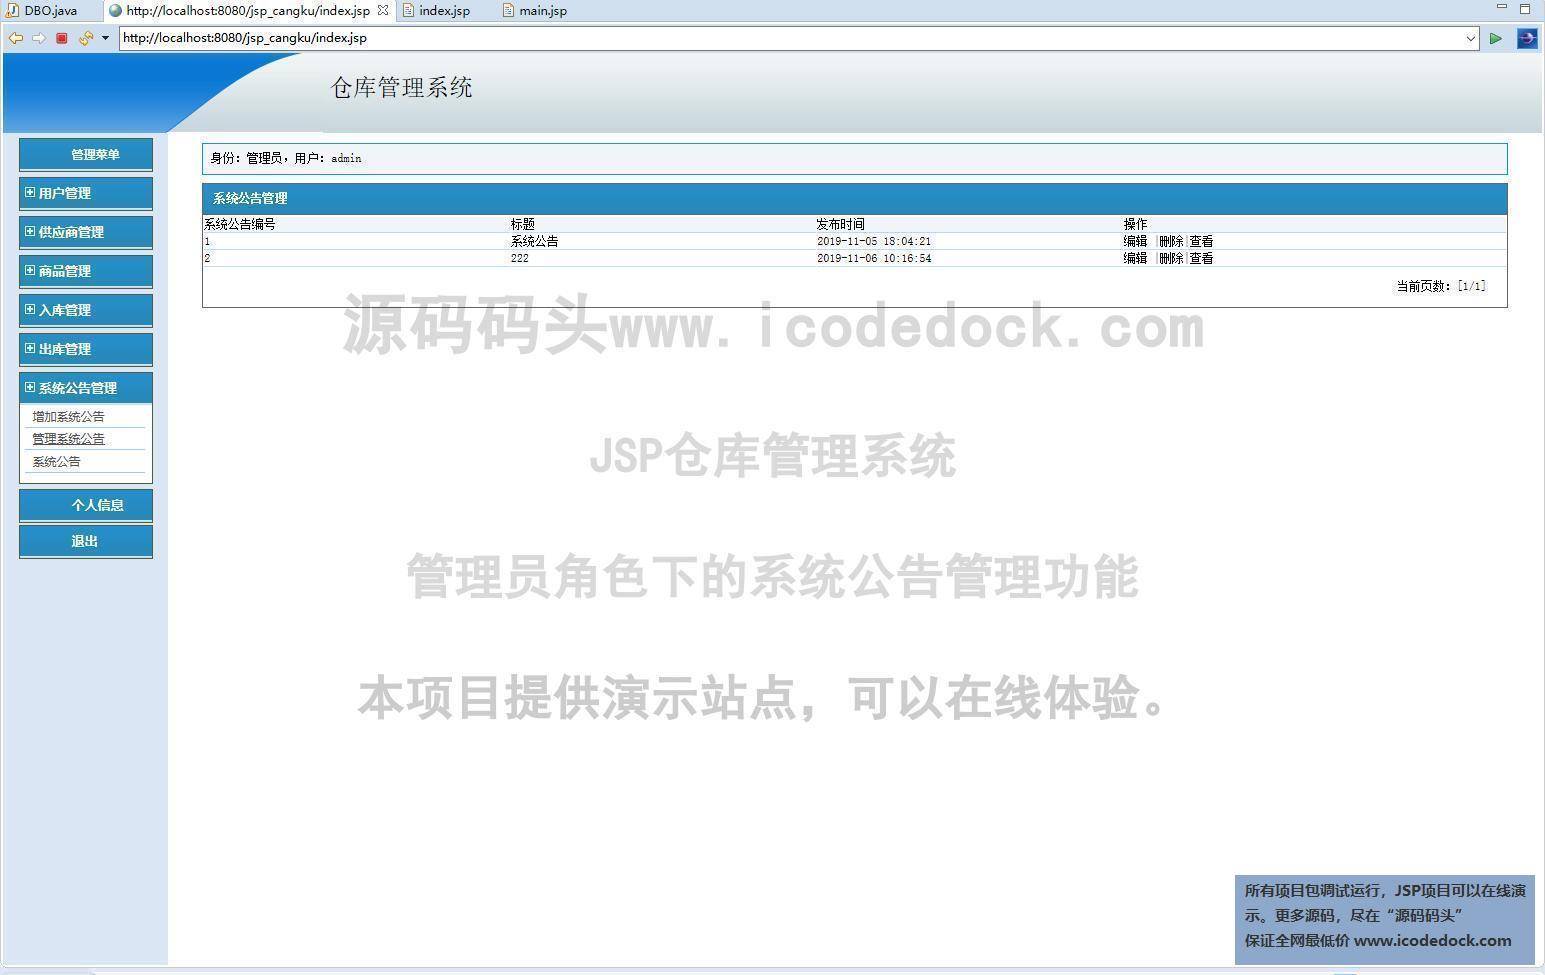 源码码头-JSP仓库管理系统-管理员角色-系统公告管理